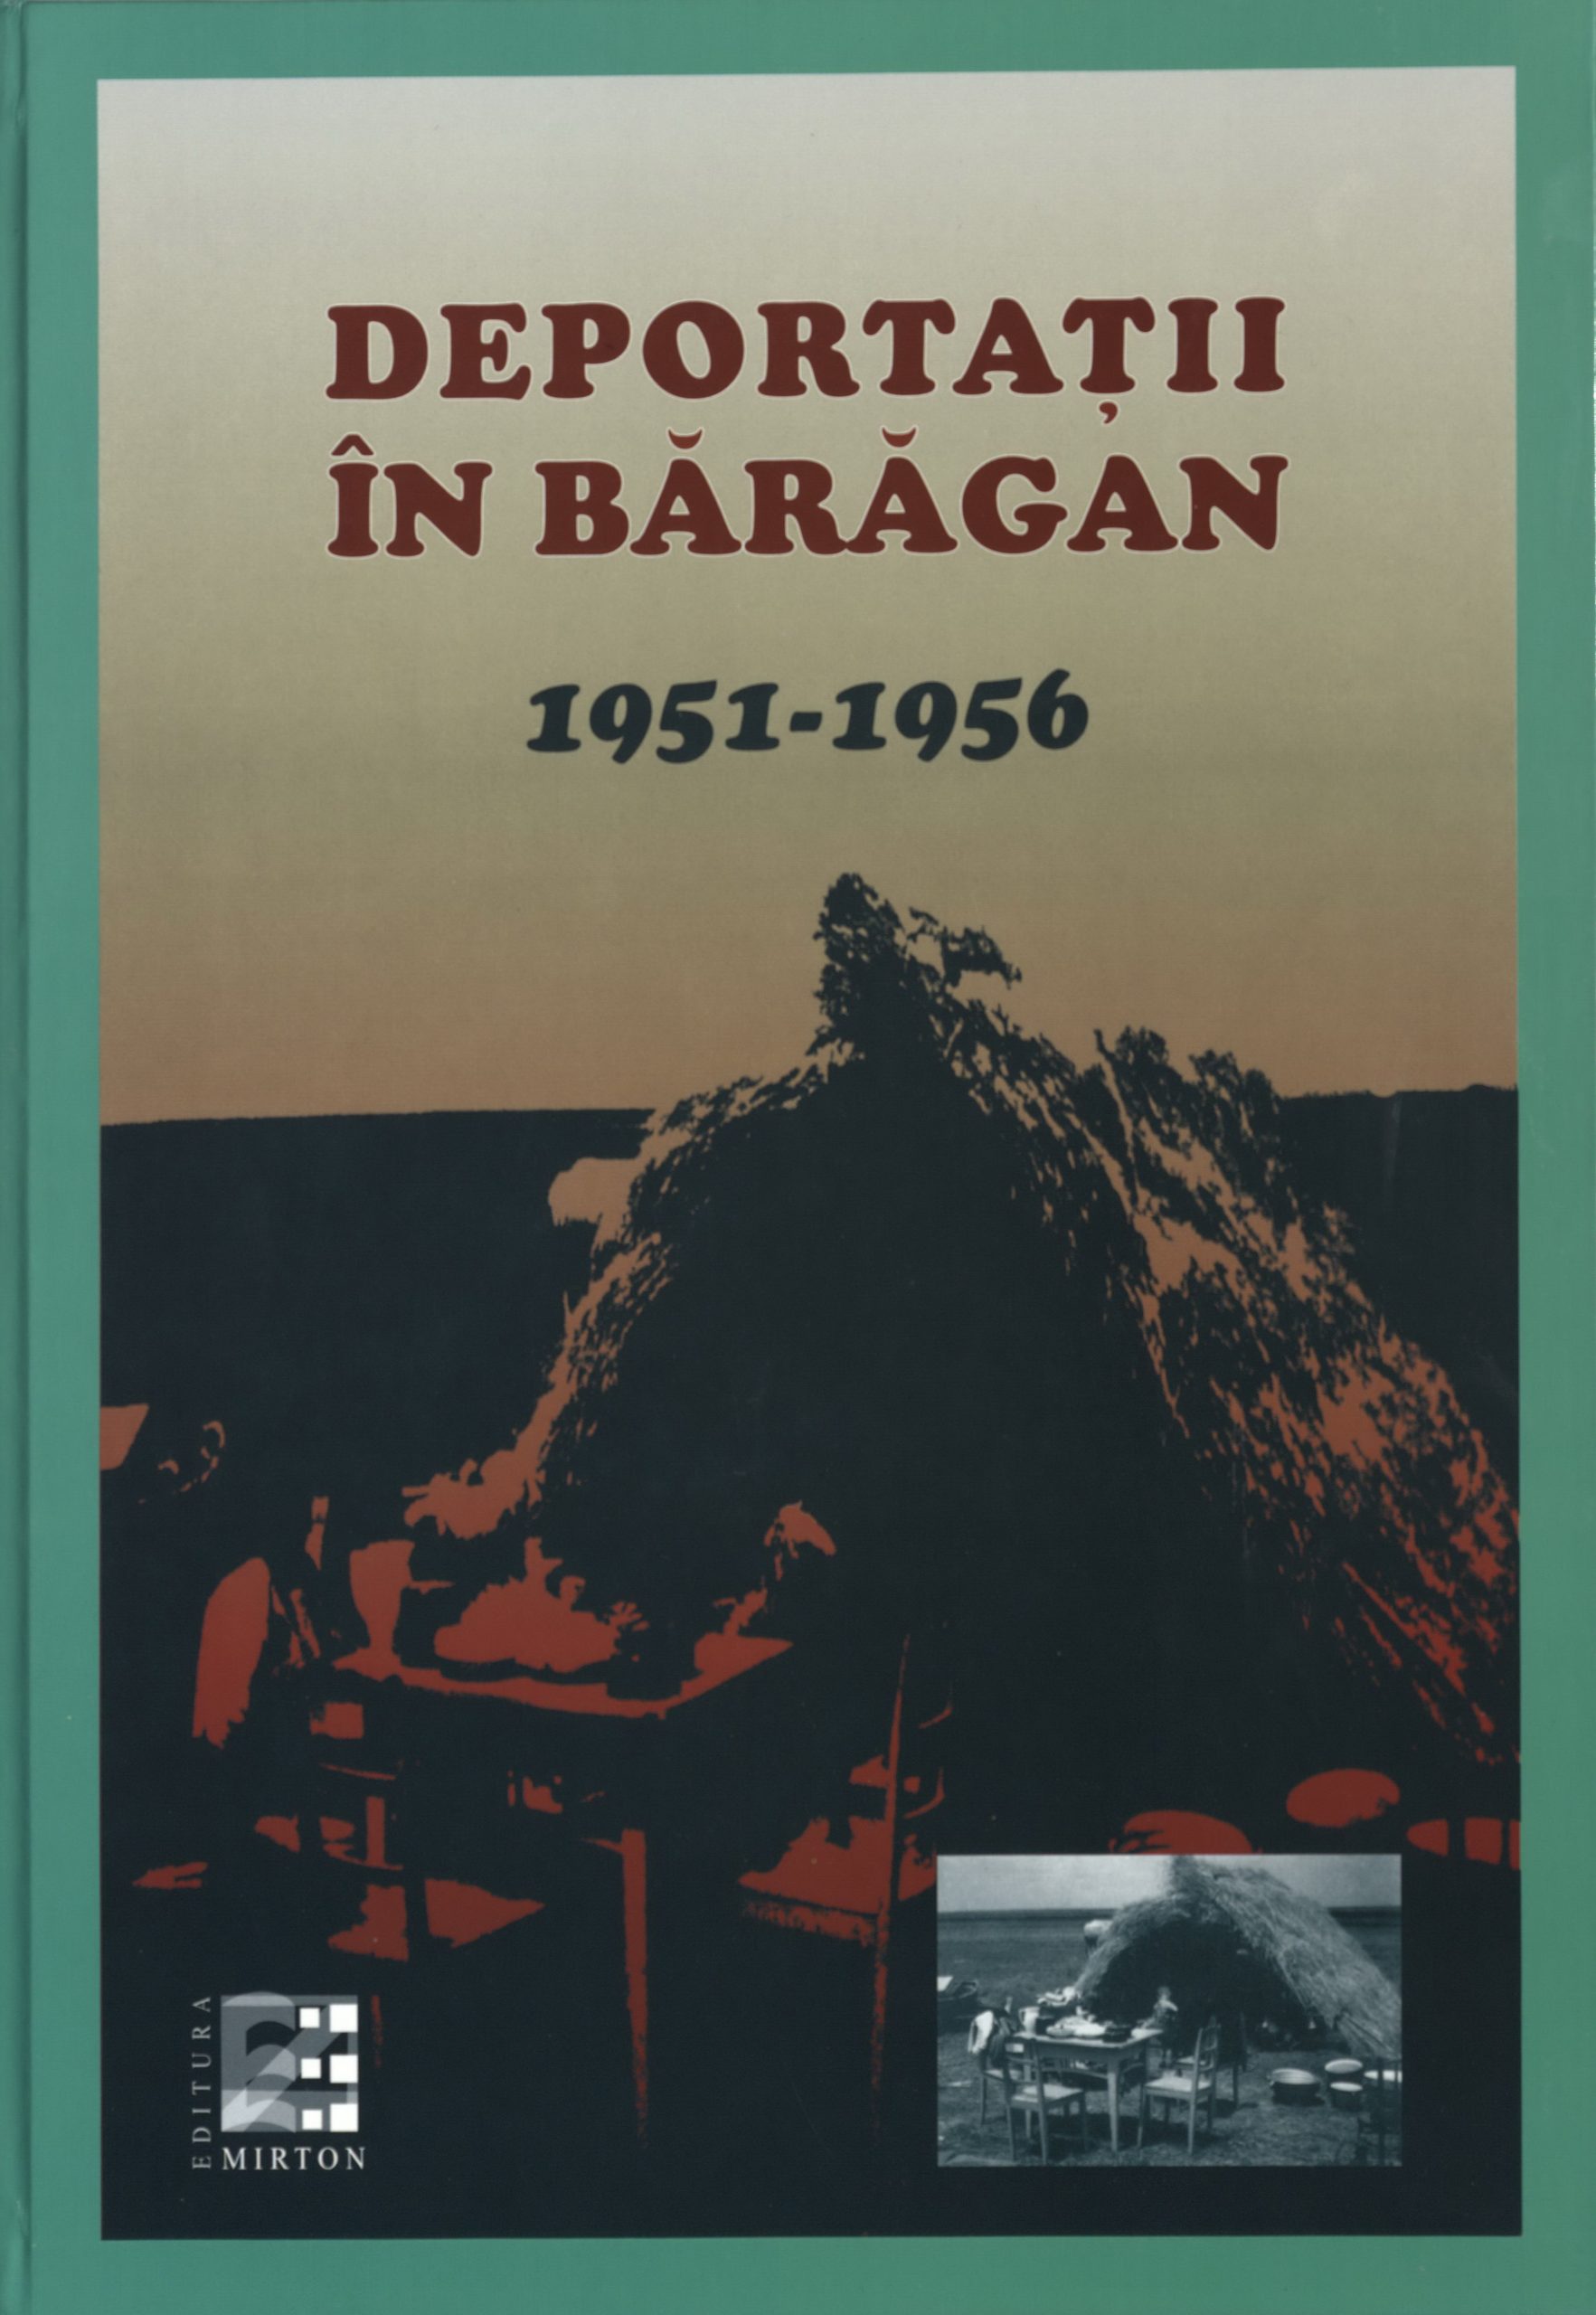 Copertă: 2014 - Silviu Sarafolean (coord.) - Deportații în Bărăgan 1951-1956, Ed. a II-a